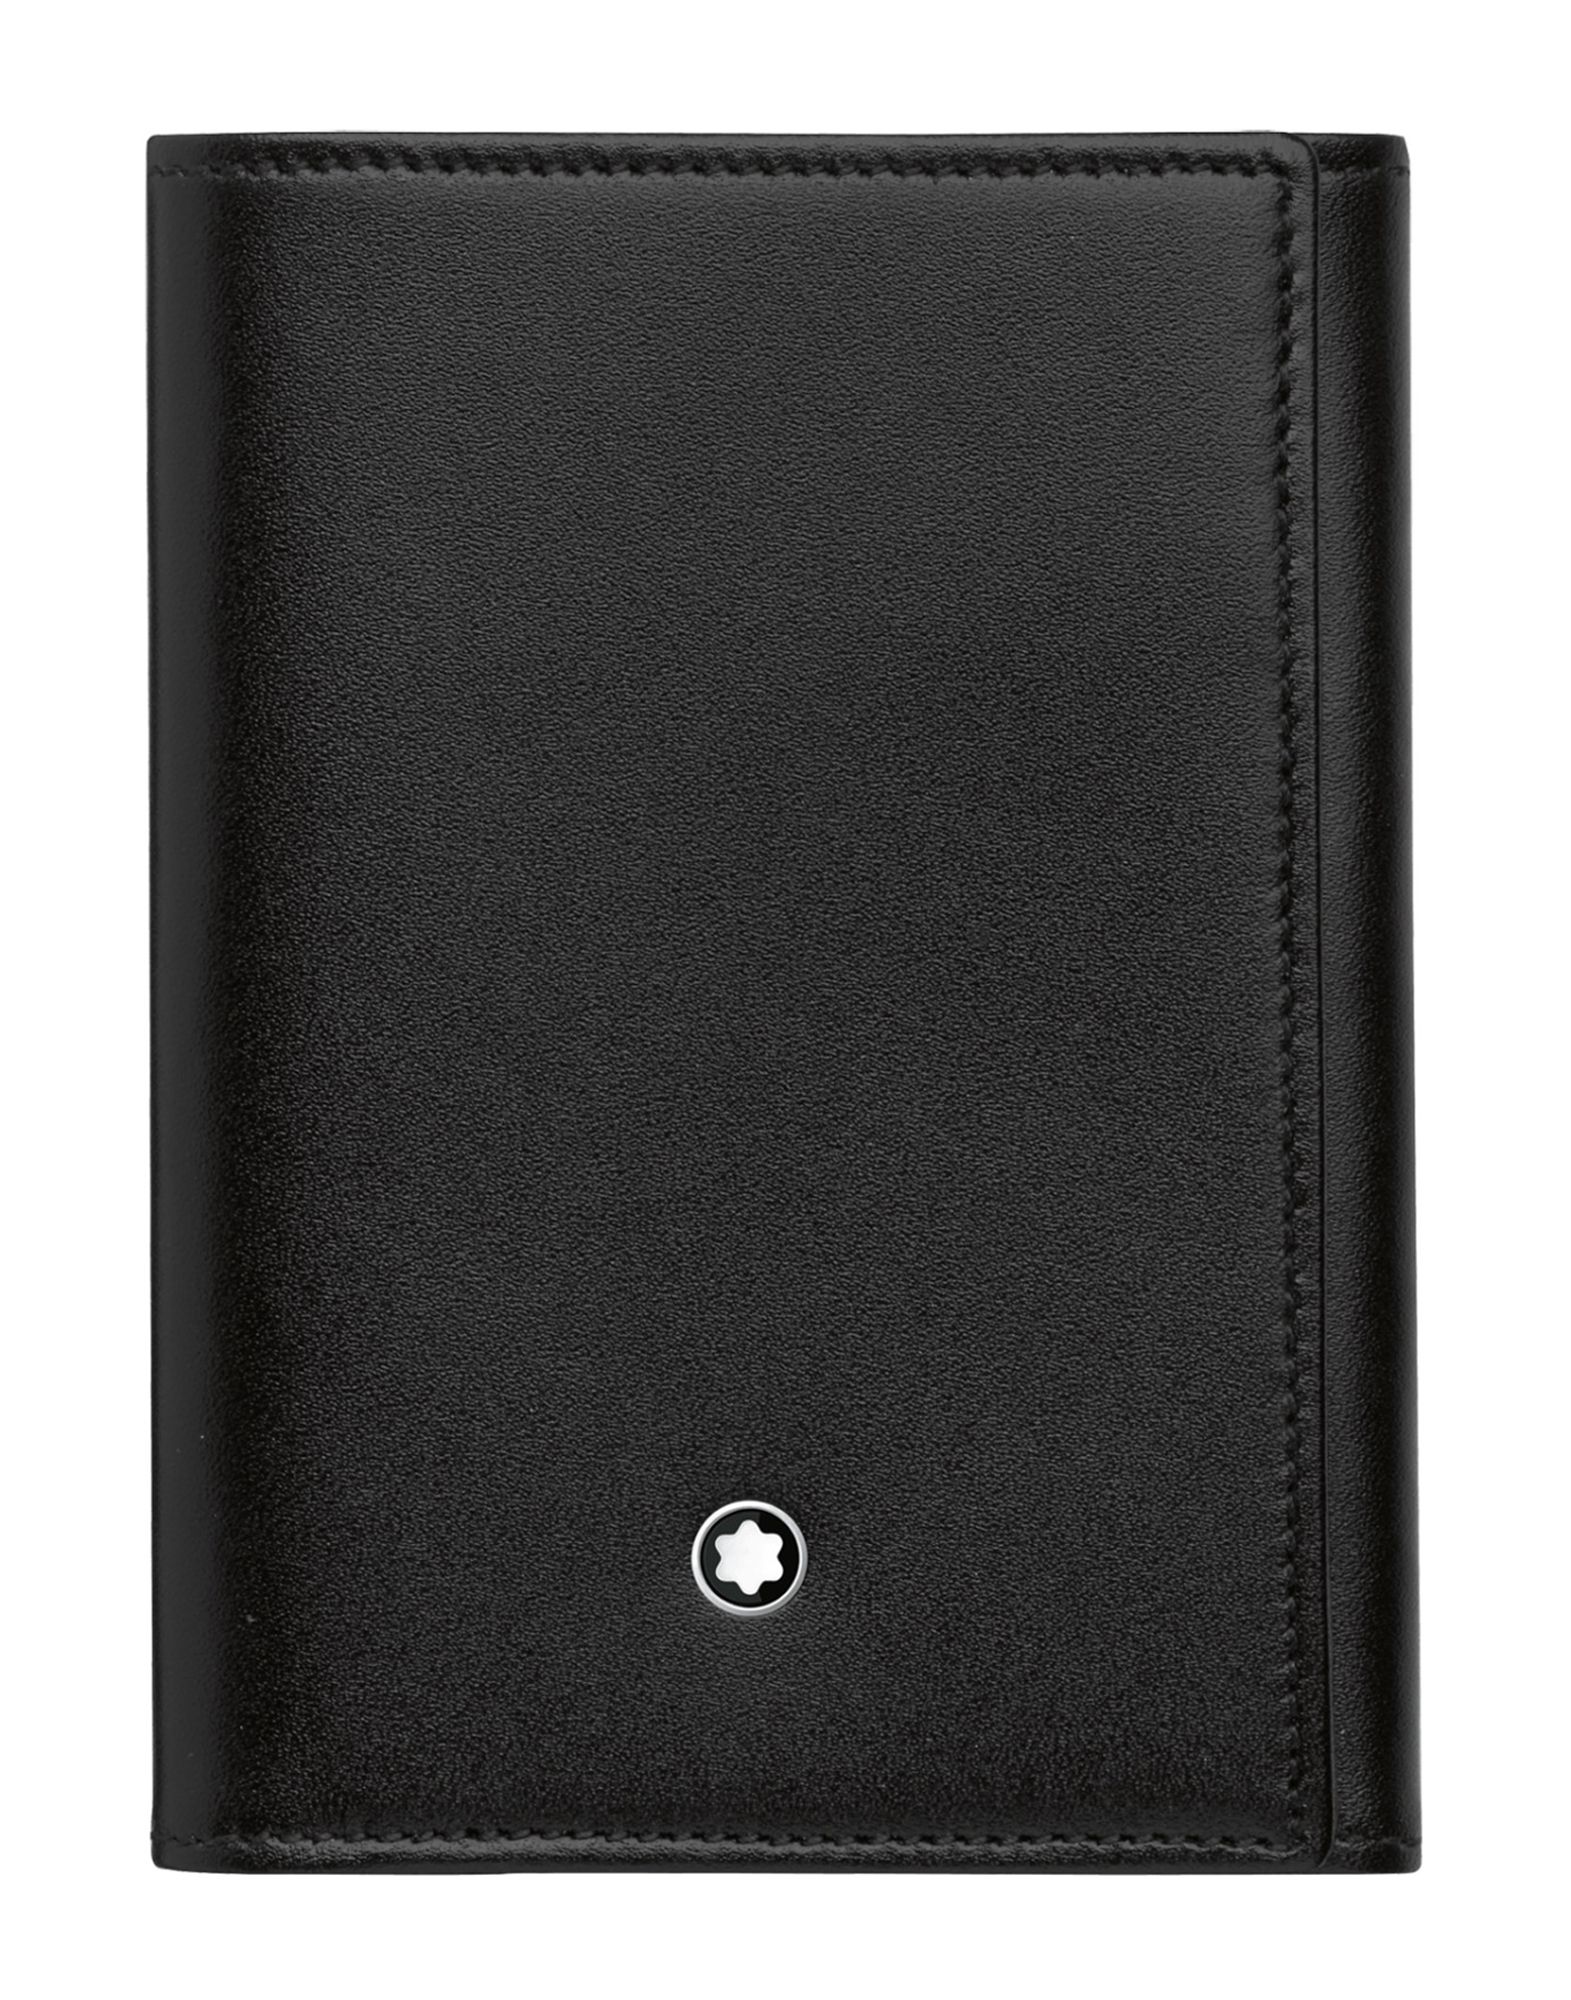 《セール開催中》MONTBLANC メンズ ドキュメントホルダー ブラック 柔らかめの牛革 Business Card Holder 9cc